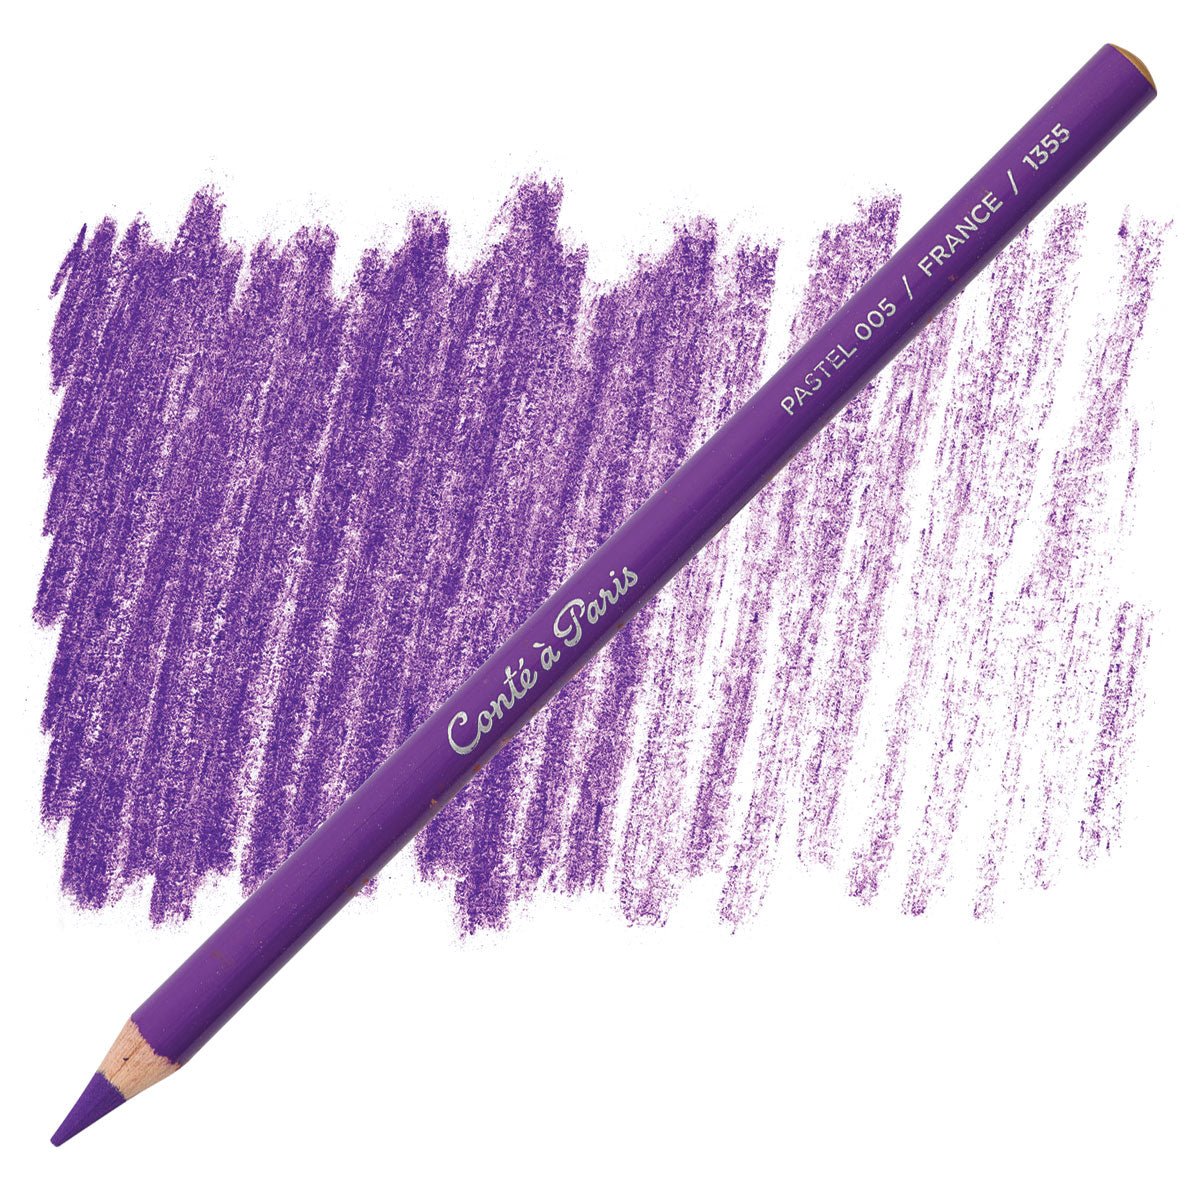 Conte Pastel Pencil 005 Violet - theartshop.com.au